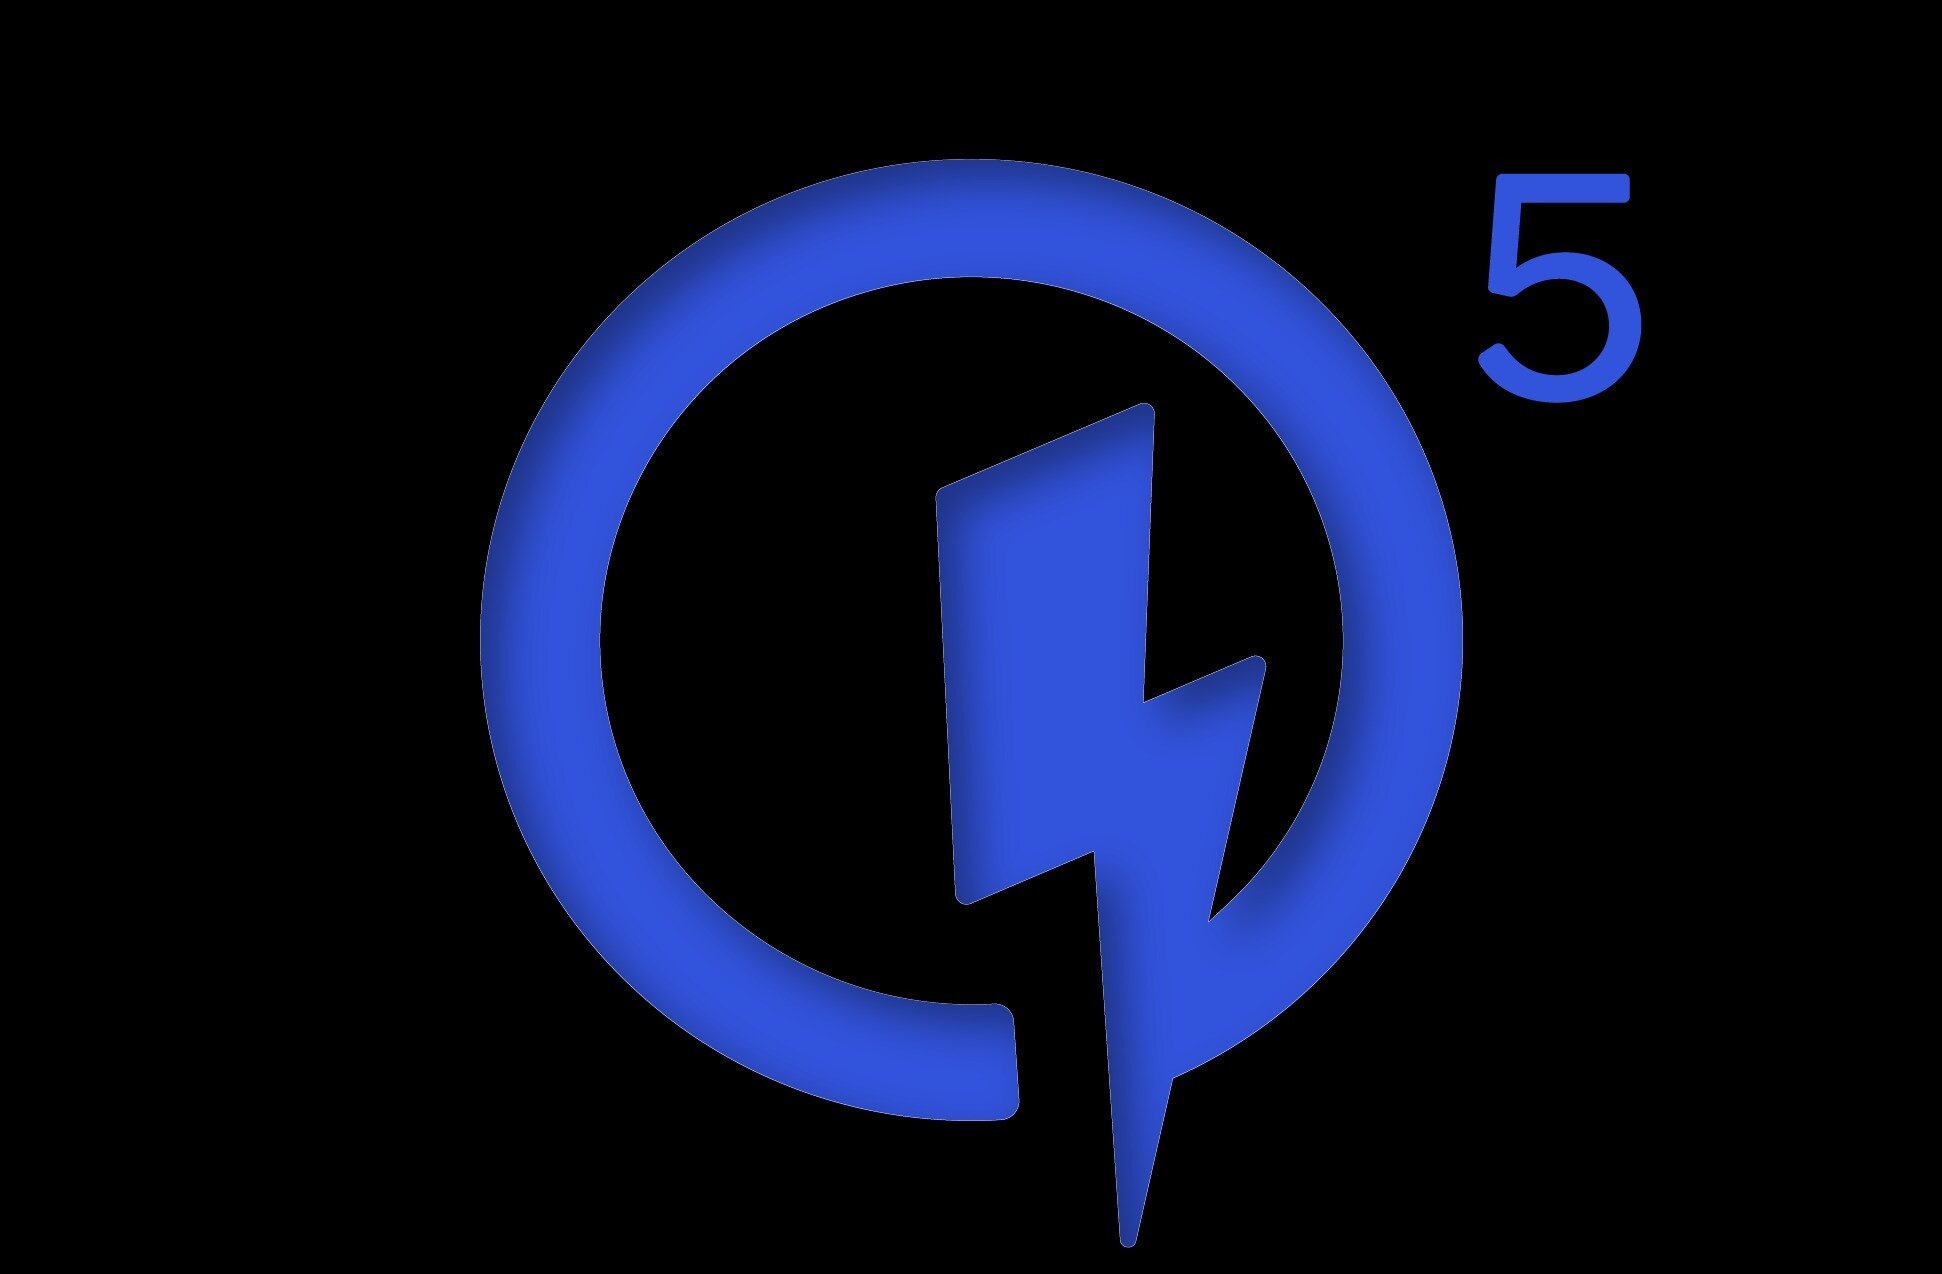 Η Qualcomm ανακοίνωσε τη λειτουργία Quick Charge 5